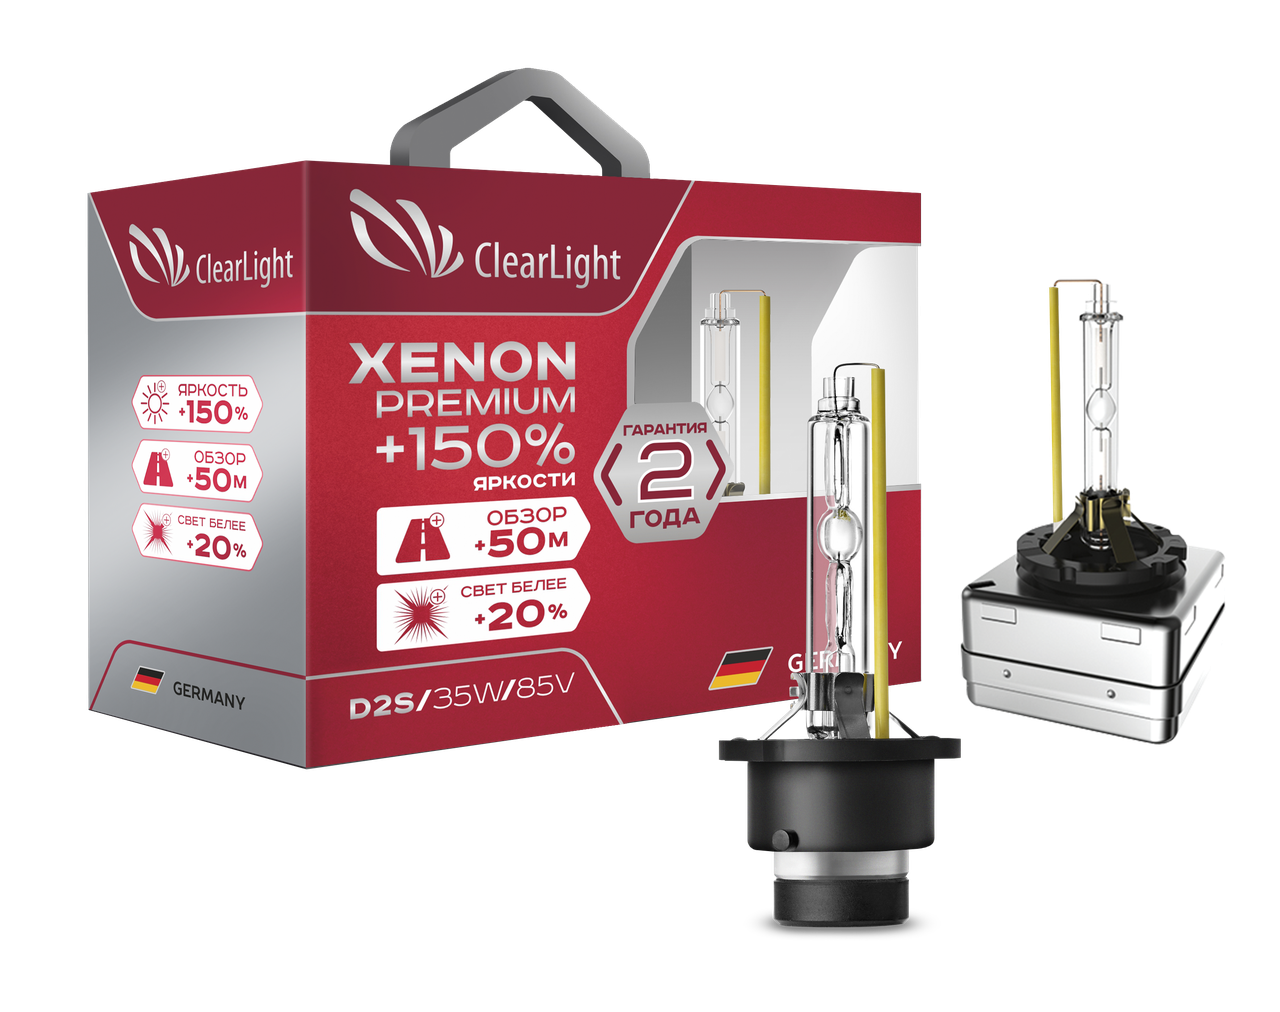 Ксенон 150. Лампа ксеноновая Clearlight Xenon Premium+150% d2s (1 шт). Лампа d1s Clearlight Xenon Premium +150. Лампа ксеноновая Clearlight Xenon Premium+150% h1 6000k. Лампа ксеноновая Clearlight Xenon Premium+150% d2r (1шт).